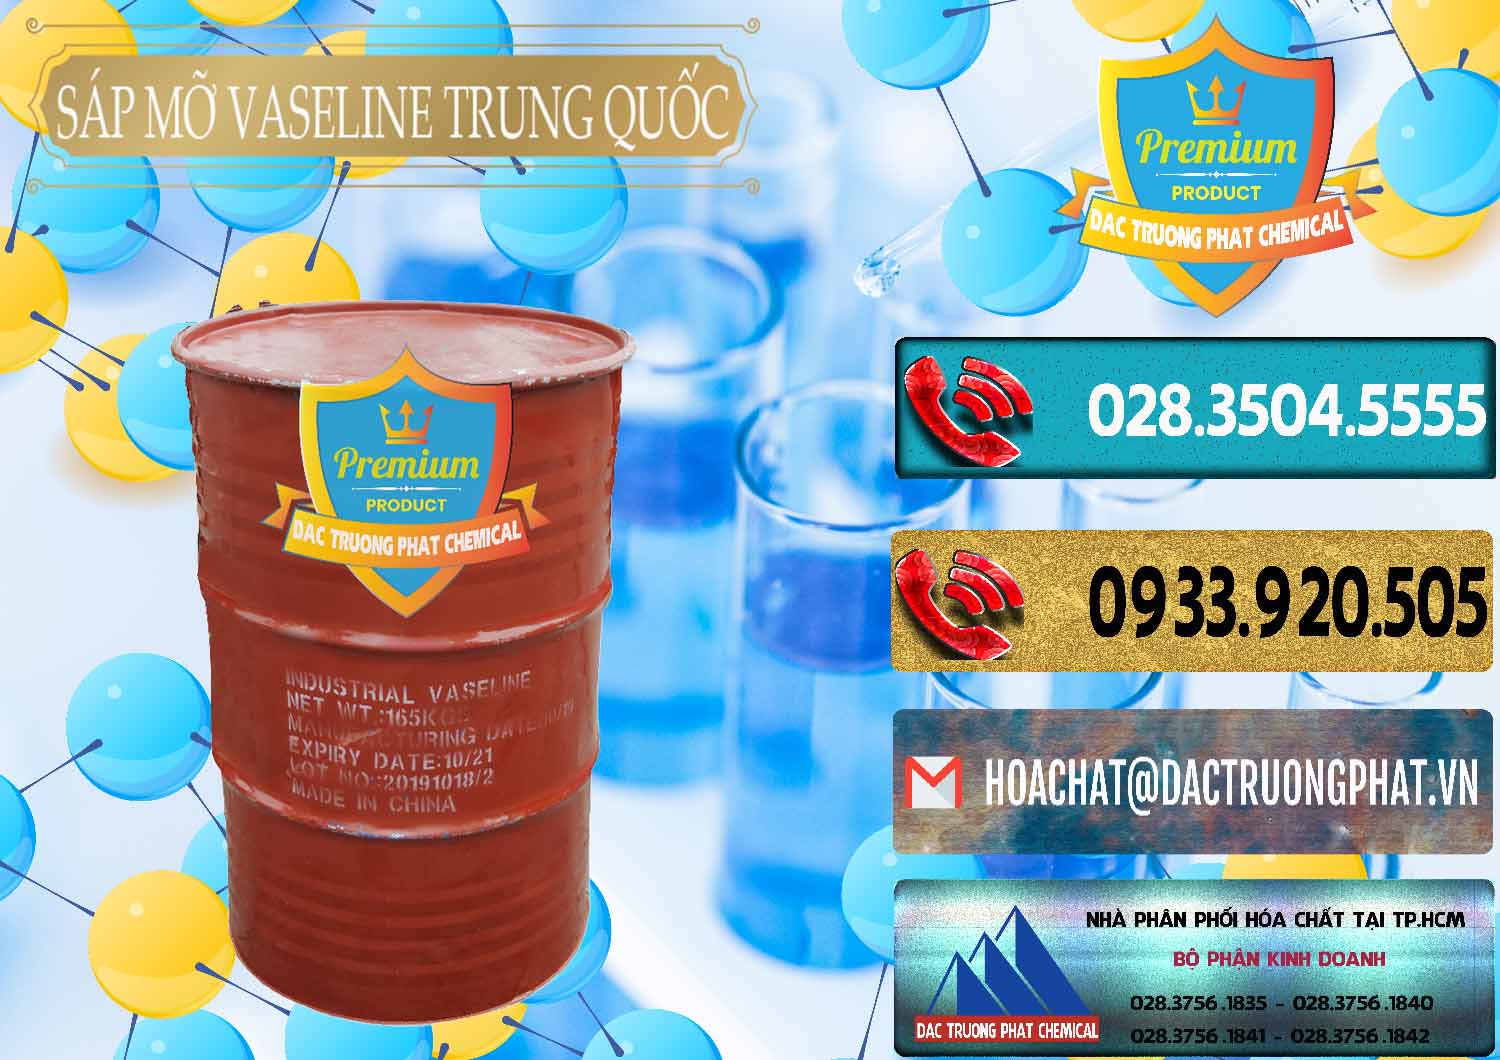 Cty chuyên cung cấp và bán Sáp Mỡ Vaseline Trung Quốc China - 0122 - Nhà cung cấp - phân phối hóa chất tại TP.HCM - hoachatdetnhuom.com